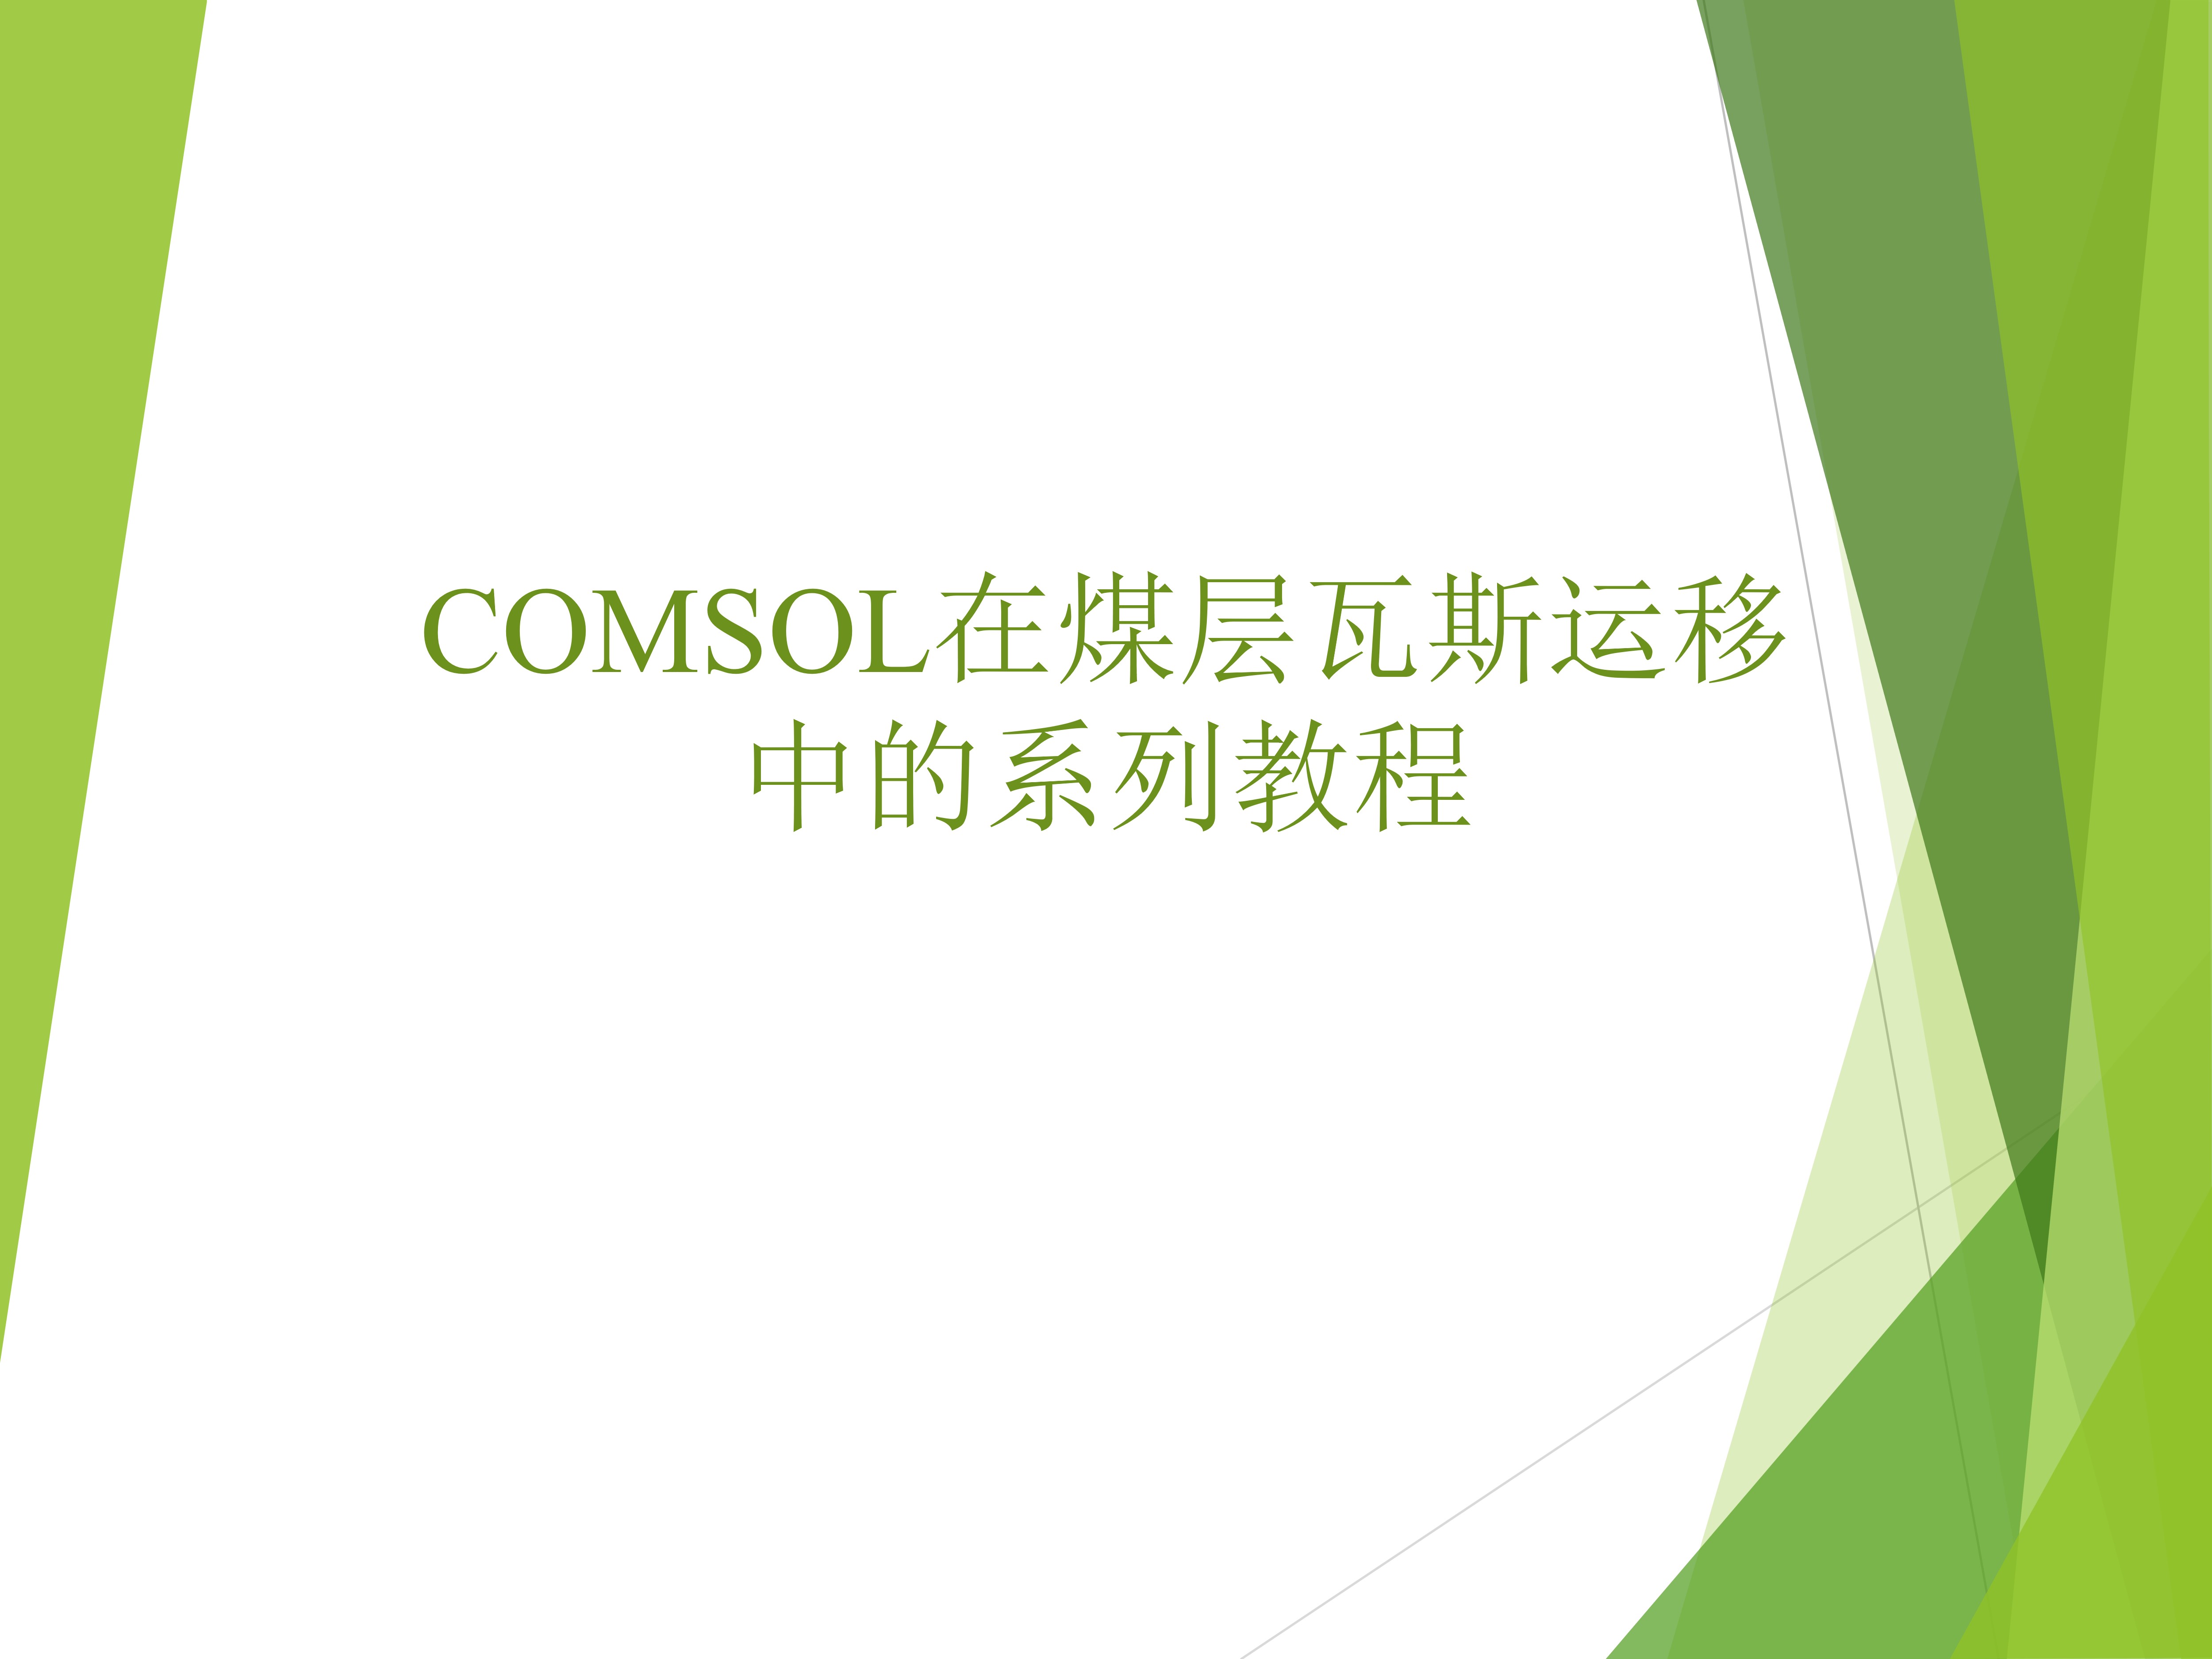 COMSOL在煤层瓦斯运移中的应用教程(一)